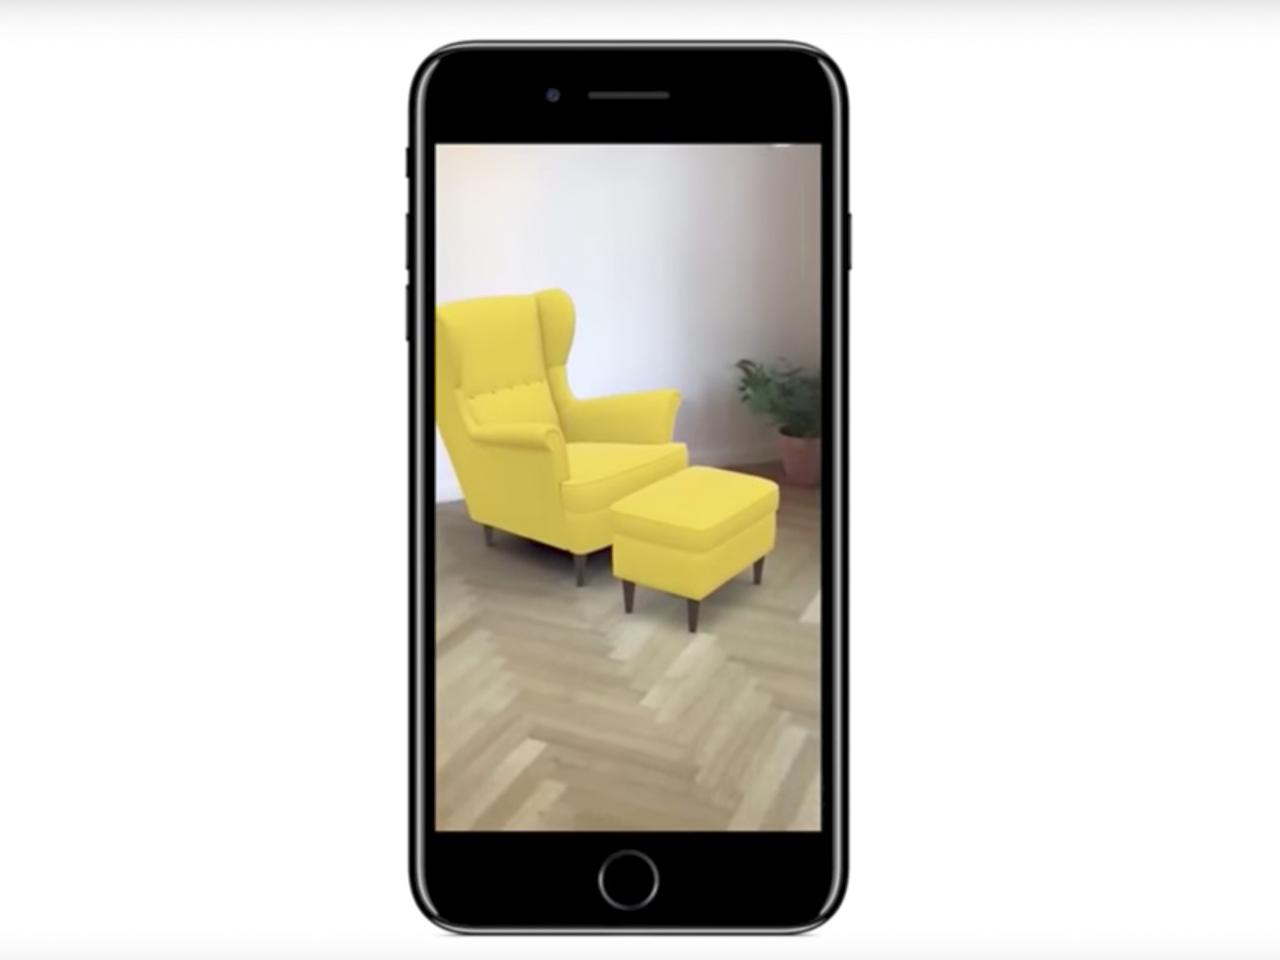 IKEA×Apple ARKit家具お試しアプリはiOS 11と共に登場？